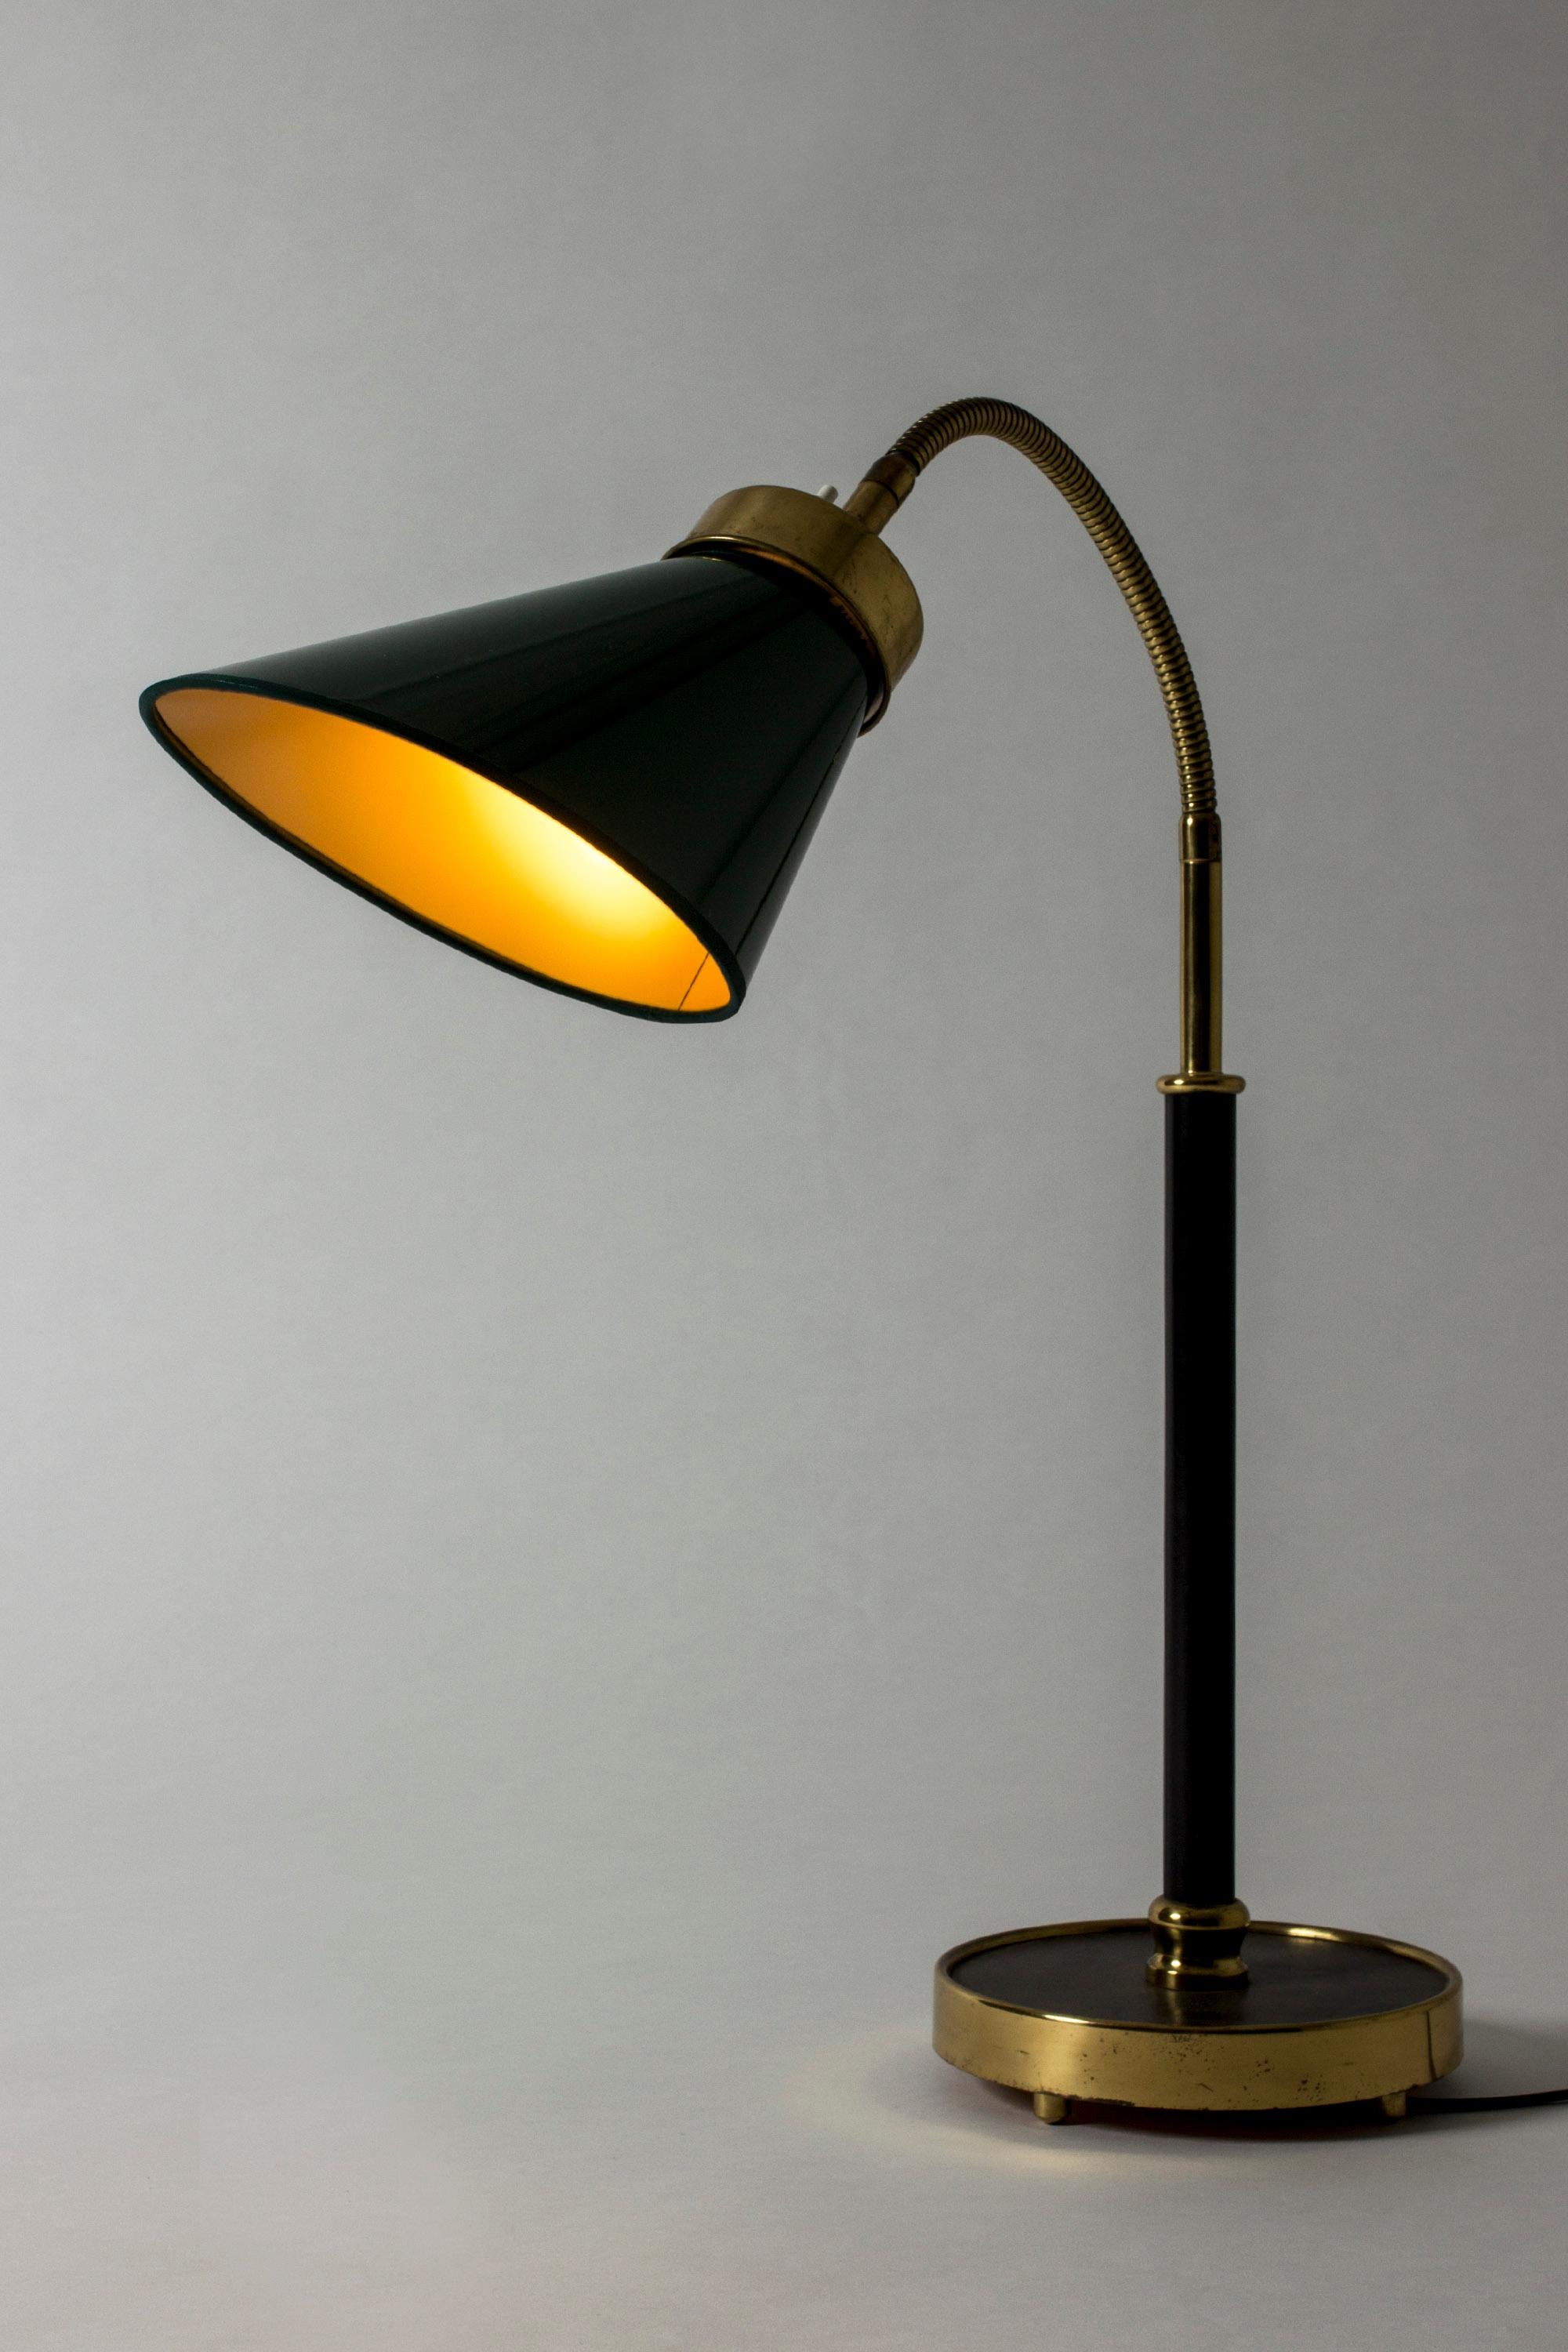 Scandinavian Modern Table Lamp #2434 Designed by Josef Frank for Svenskt Tenn, Sweden For Sale